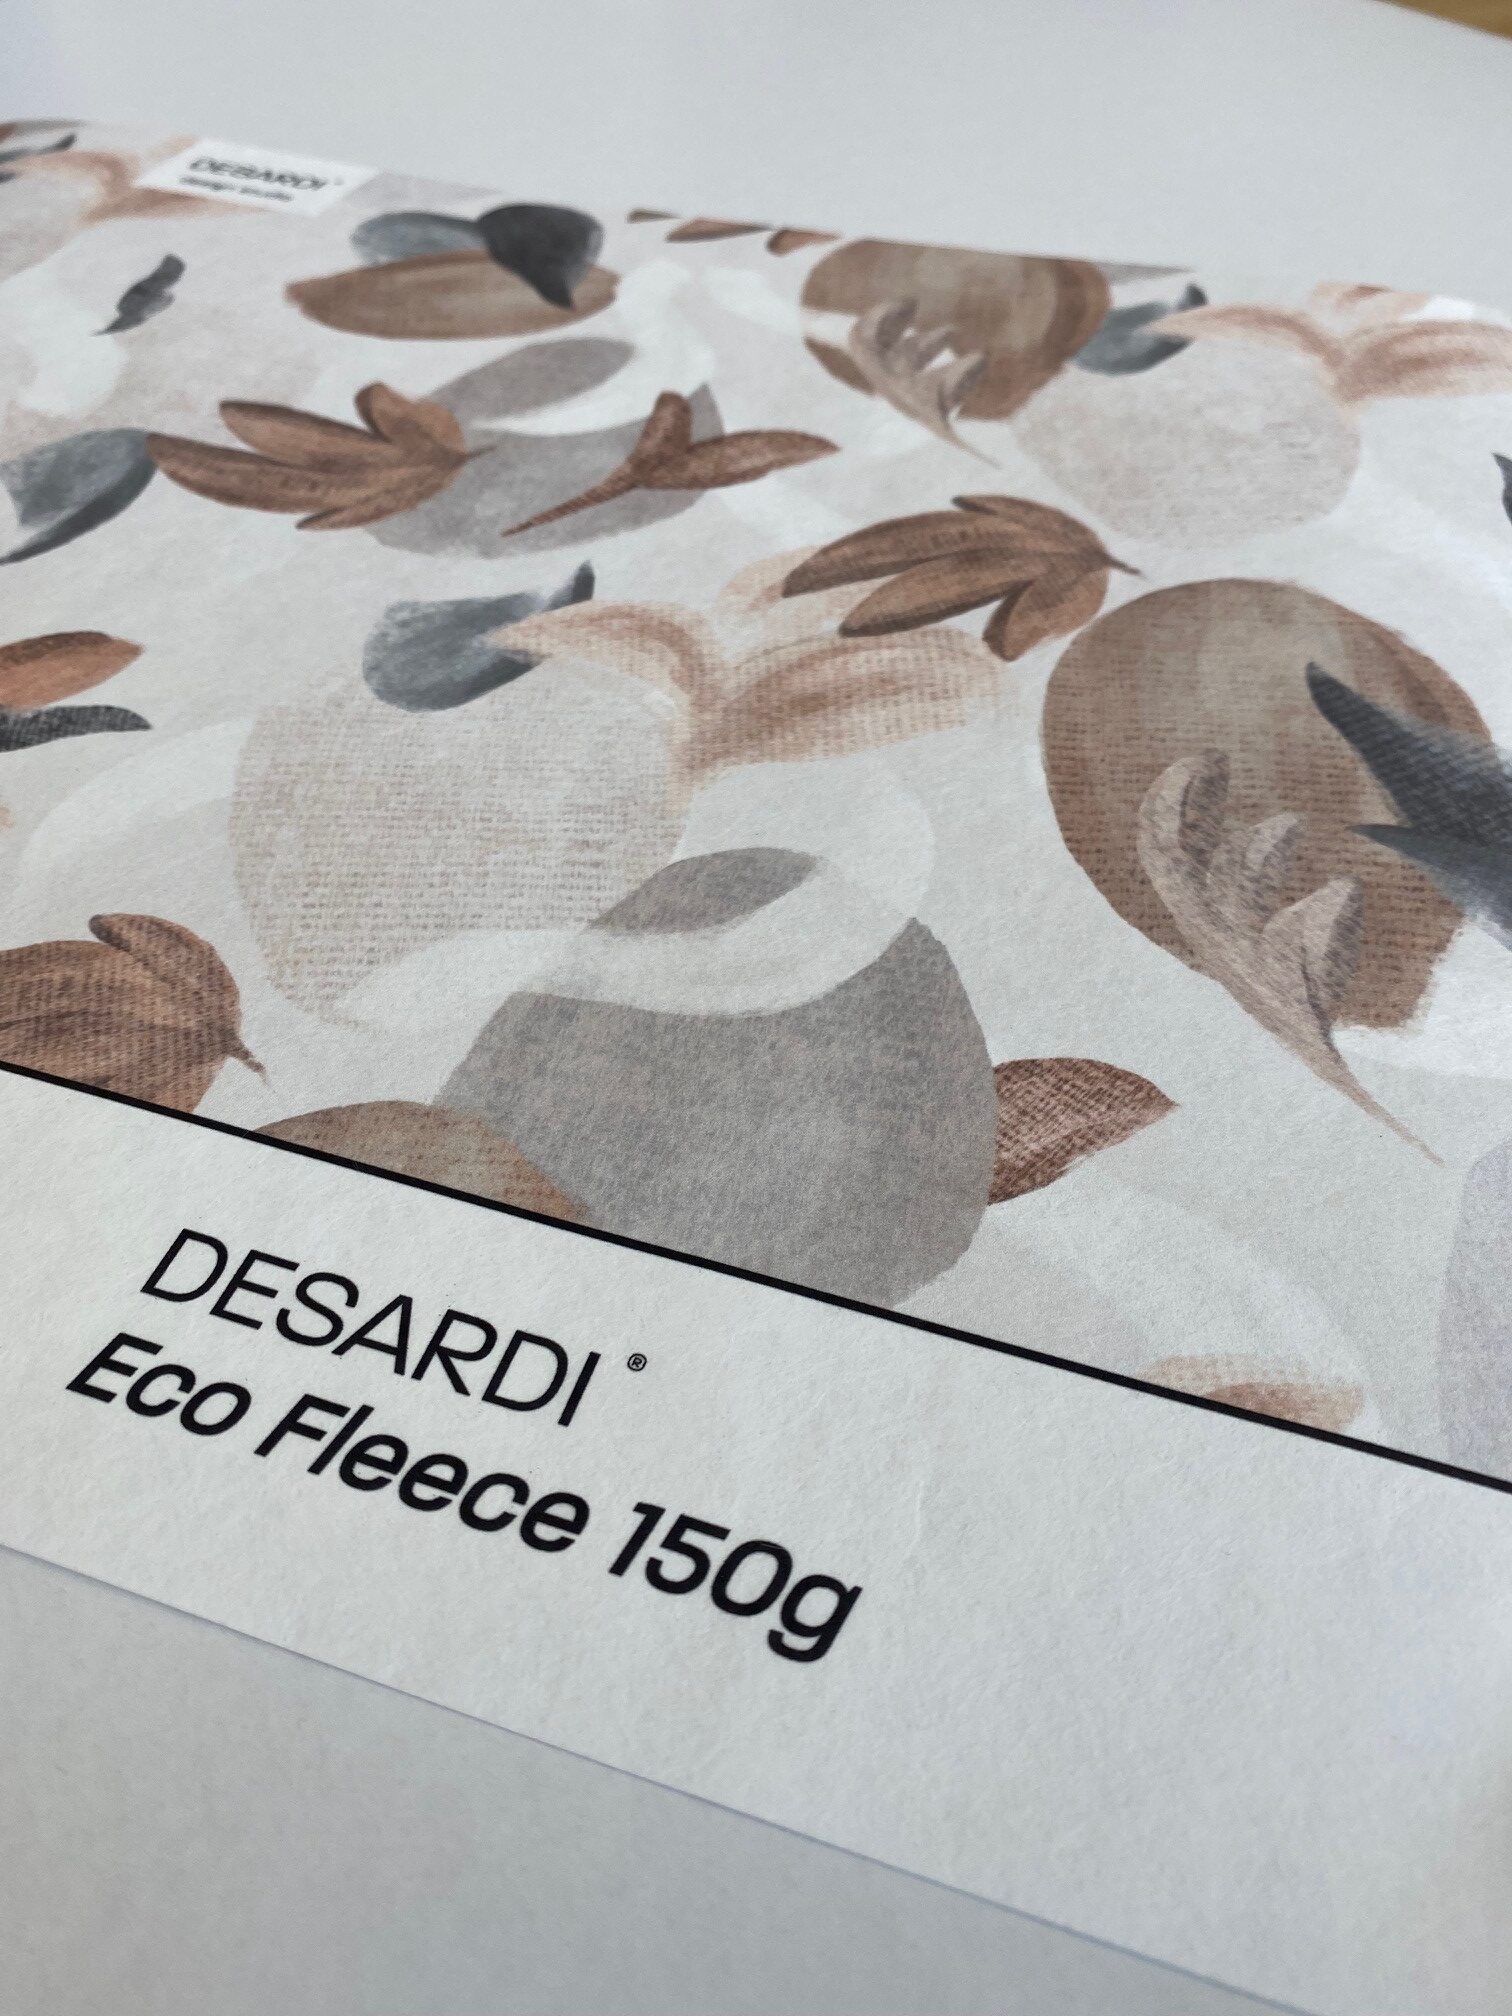 DESARDI Eco Fleece 150g